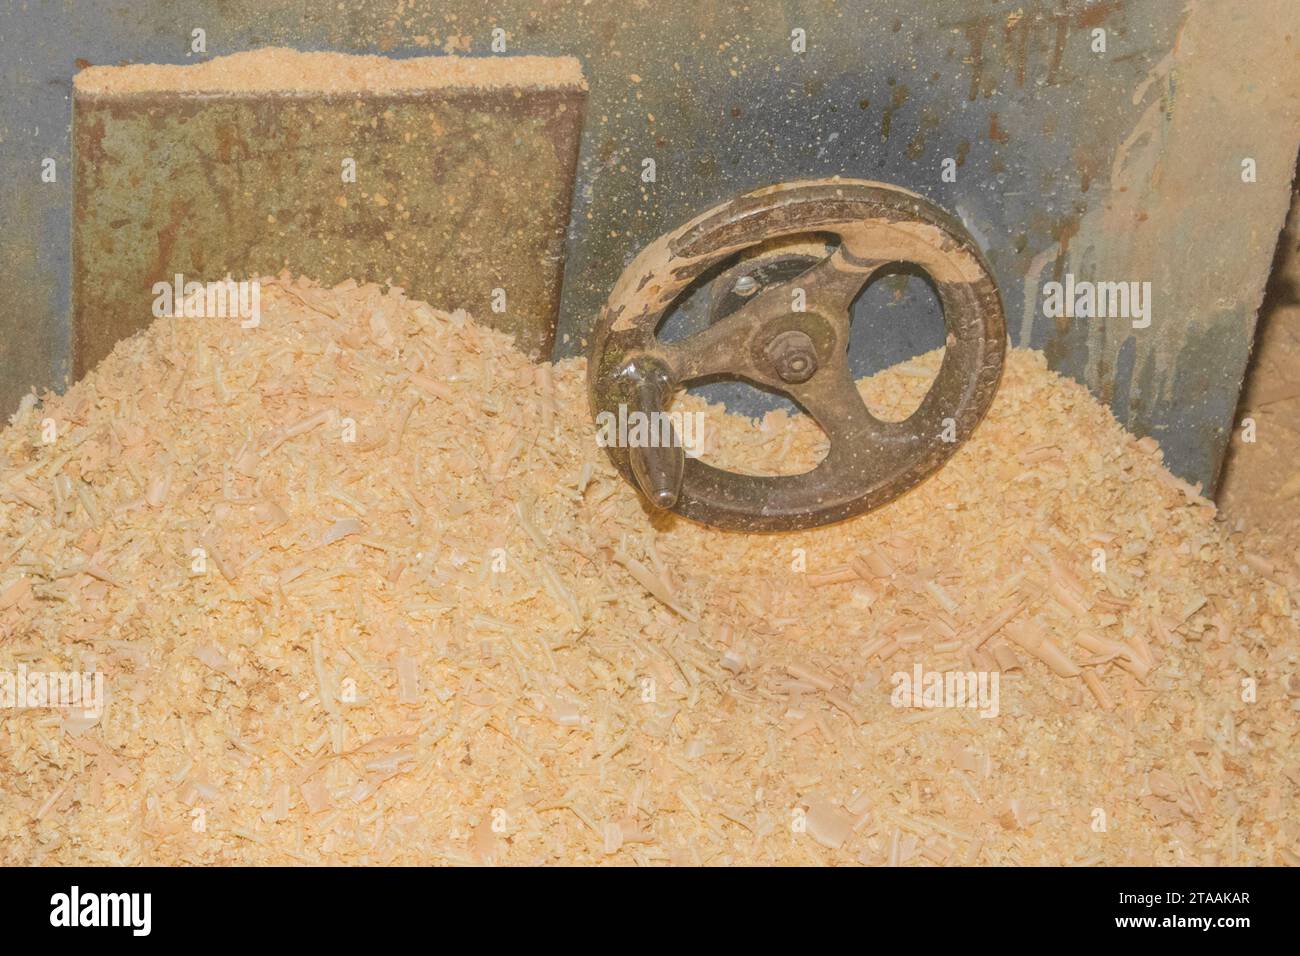 Riciclaggio dei rifiuti di Sawdust in legno industria delle macchine utensili per impianti industriali in legno. Foto Stock